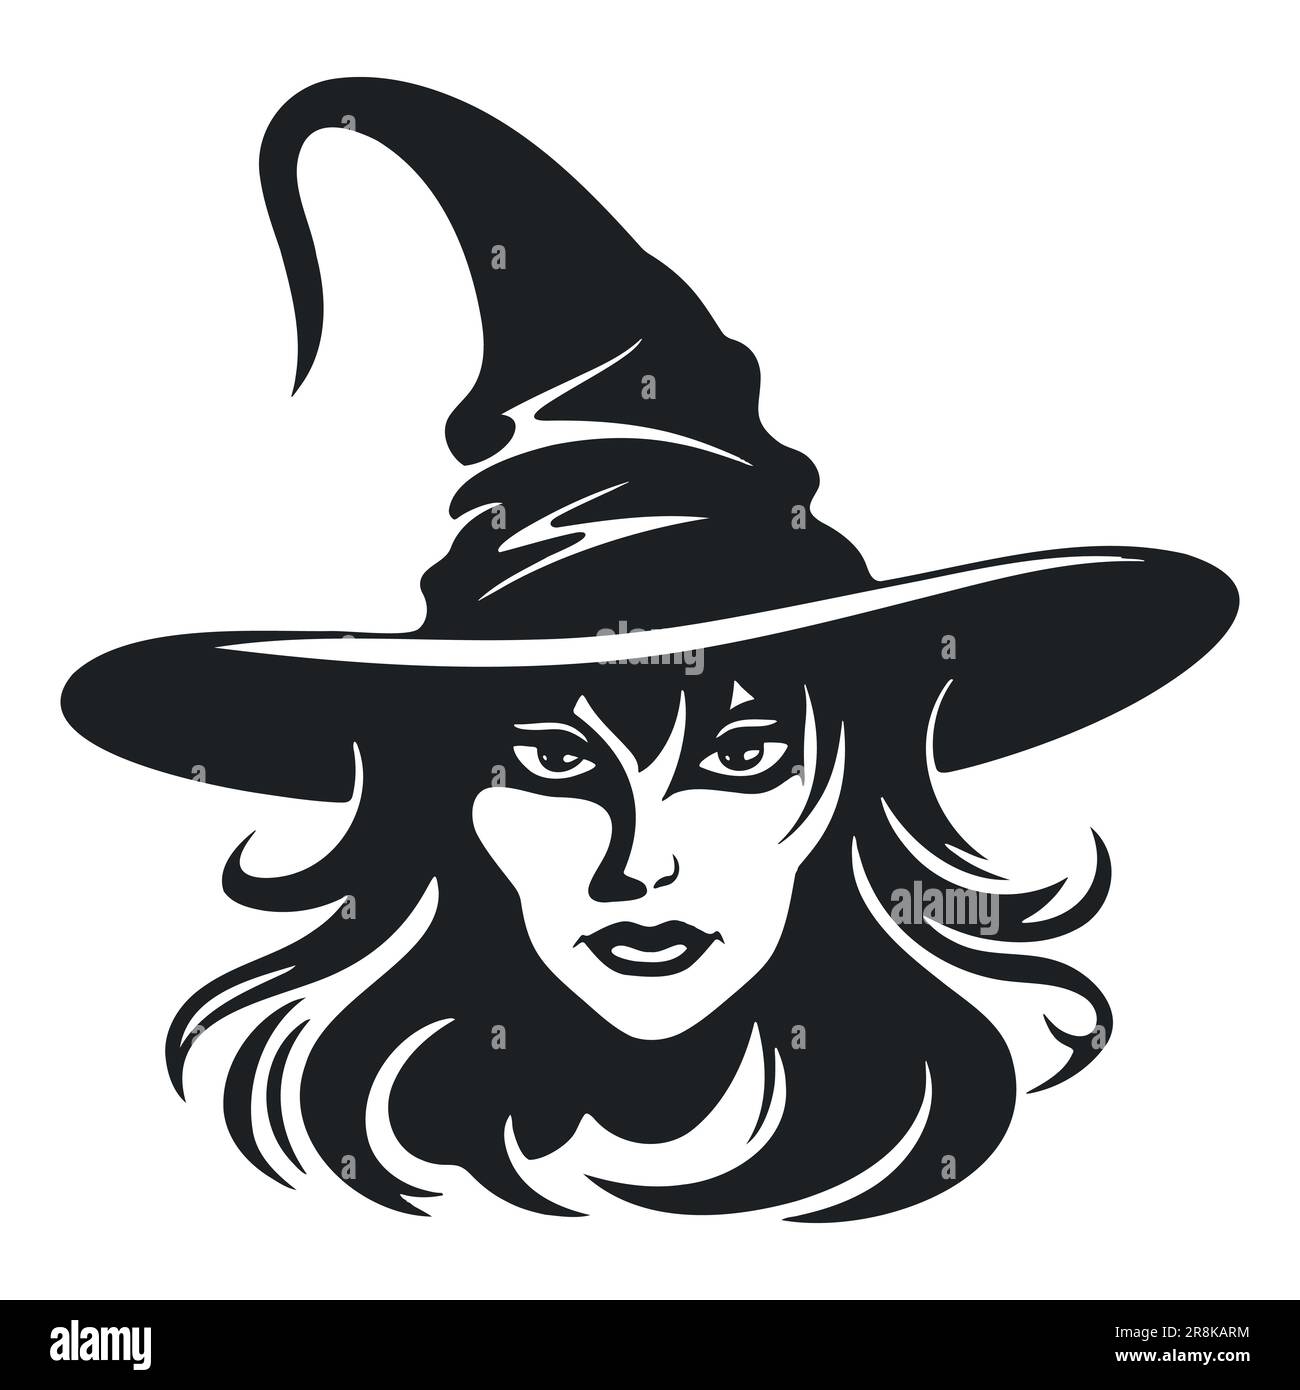 Hexe mit traditionellem Hut - Zauberkostüm für schwarzweiß-vektorporträt zu halloween Stock Vektor